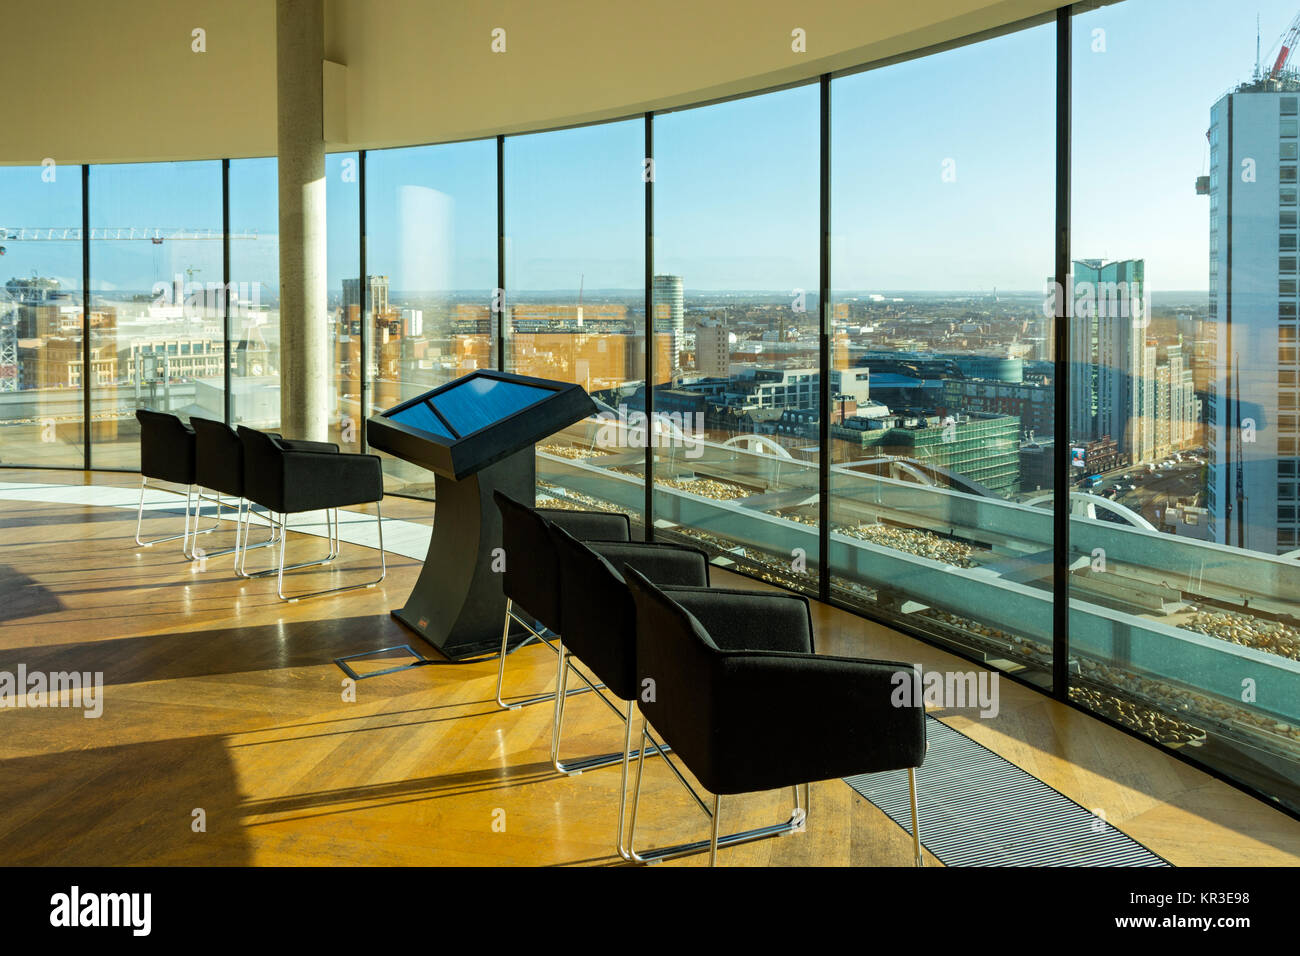 Die Skyline Sicht Anzeigebereich in der Bibliothek von Birmingham, Centenary Square, Birmingham, England, Großbritannien Stockfoto